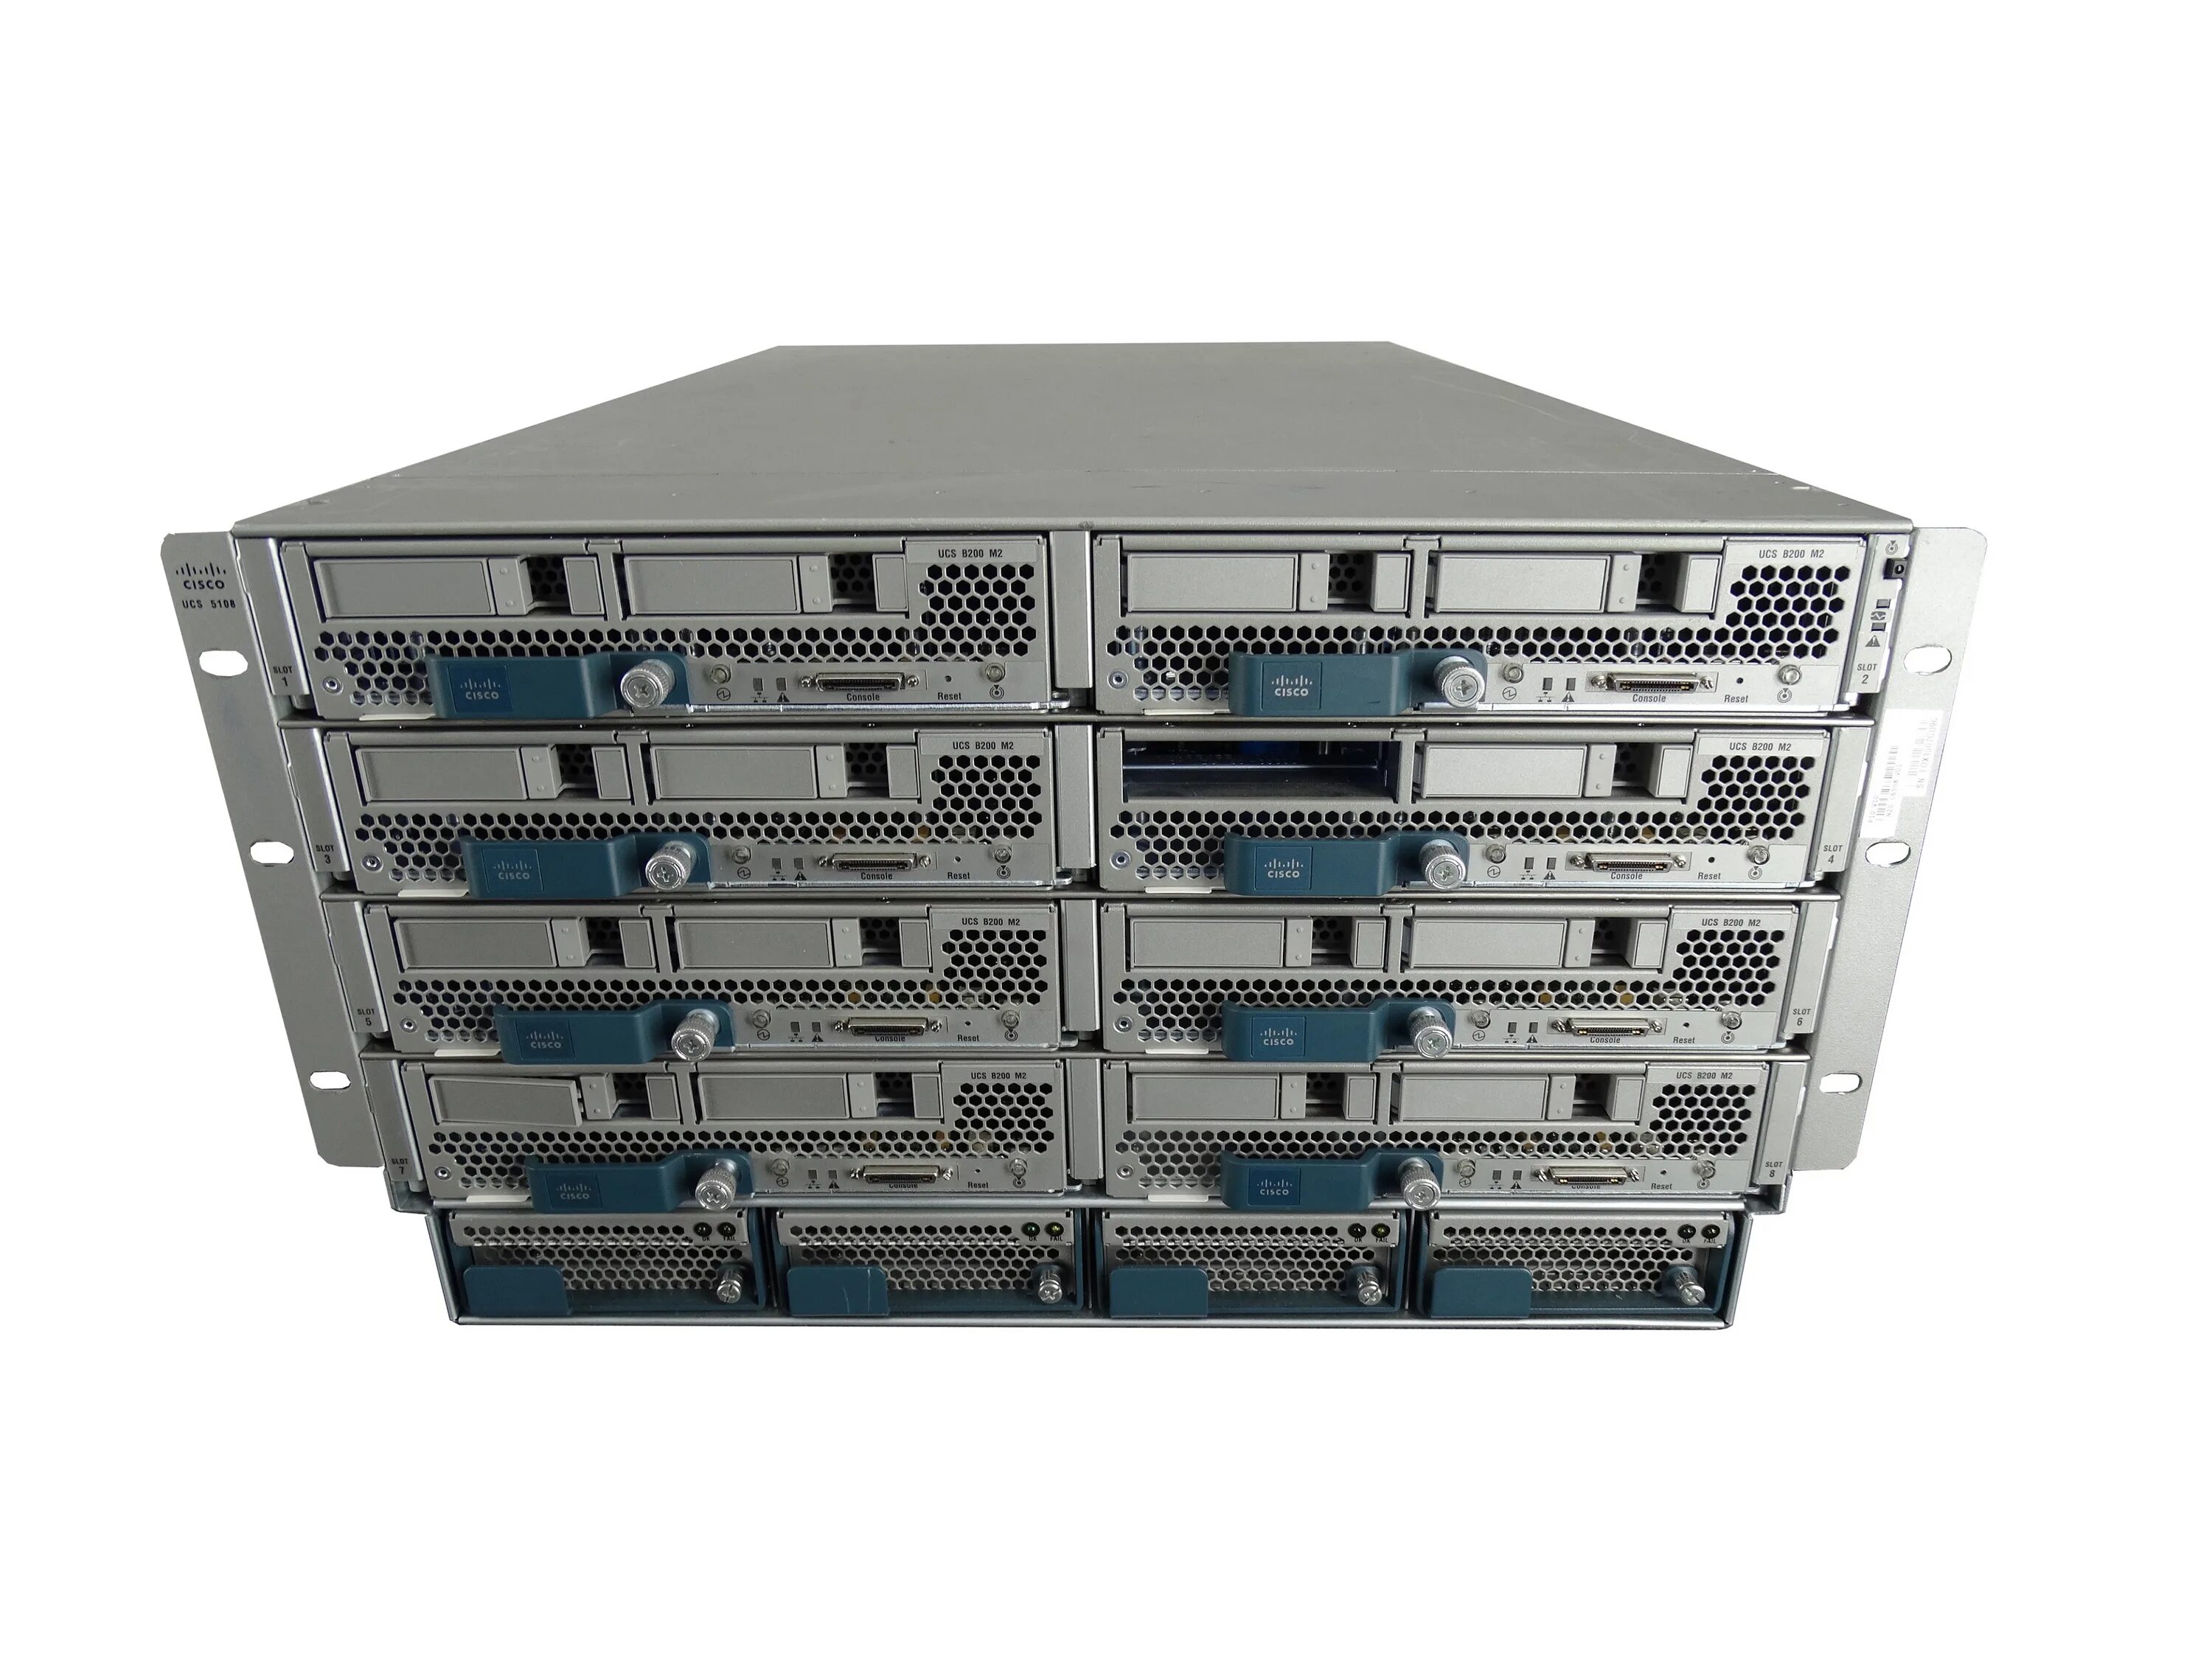 Per server. Cisco UCS b200 m3. Cisco UCS 5108 Chassis. Cisco UCS 5108. Cisco UCS b200 m2.